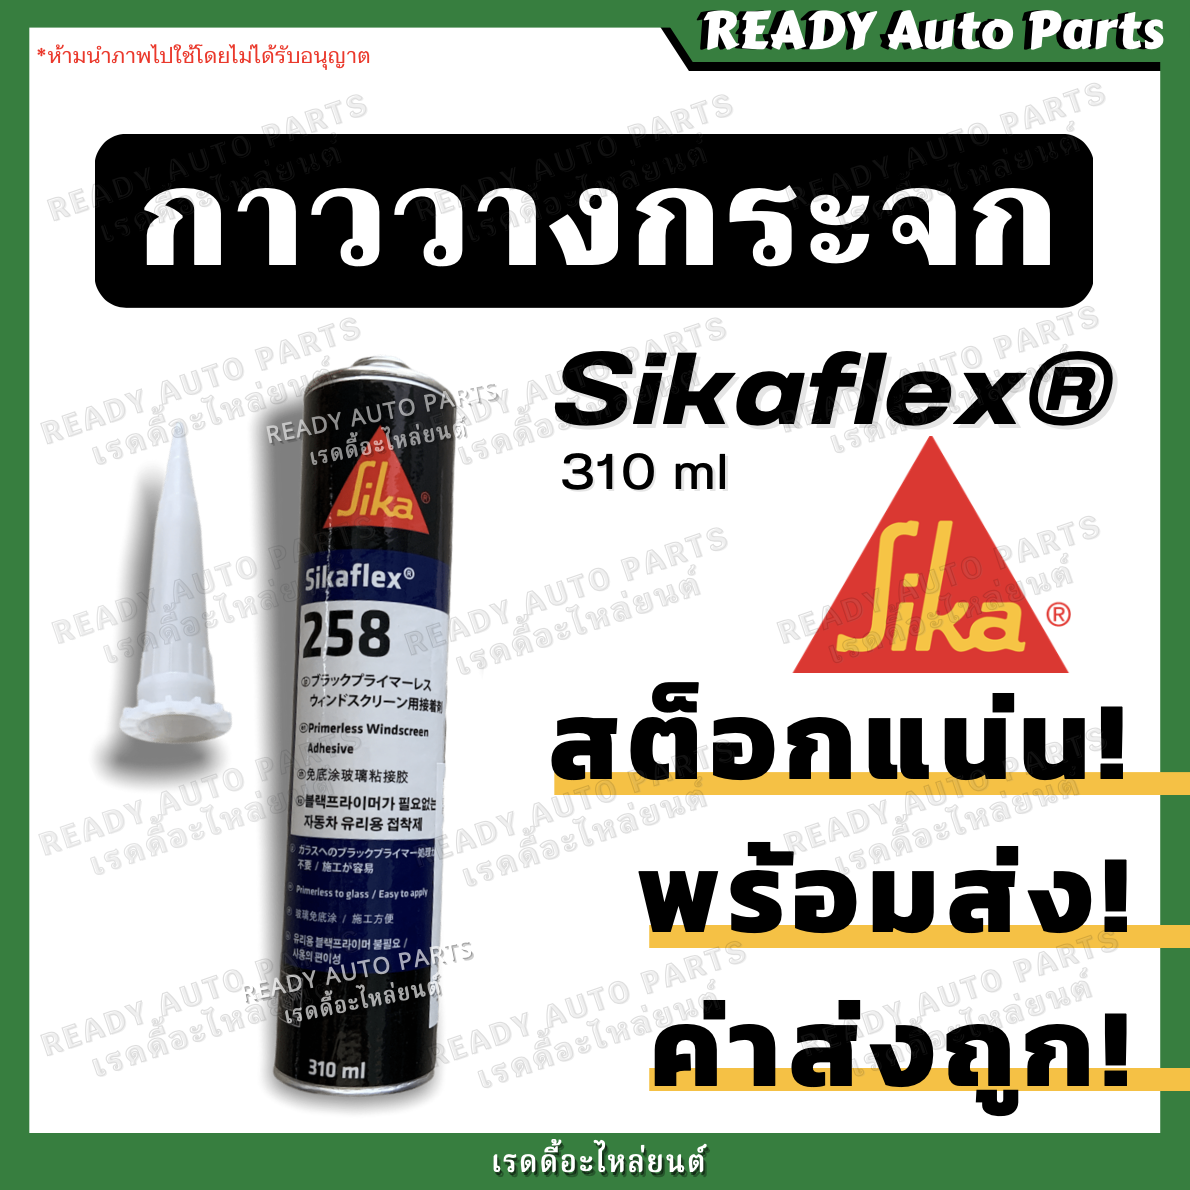 คำอธิบายเพิ่มเติมเกี่ยวกับ กาวติดกระจกรถยนต์ ซิก้าเฟล็กซ์ กาววางกระจก กาวโพลียูรีเทนประสิทธิภาพสูงจาก SIKA สำหรับติดกระจกรถยนต์ SIKAFLEX 258 กาววางกระจกรถยนต์ กาวซ่อมกระจกรถยนต์ กาวติดกระจกรถ กาวติดกระจกหน้ารถ กาวติดกระจกหลังรถ